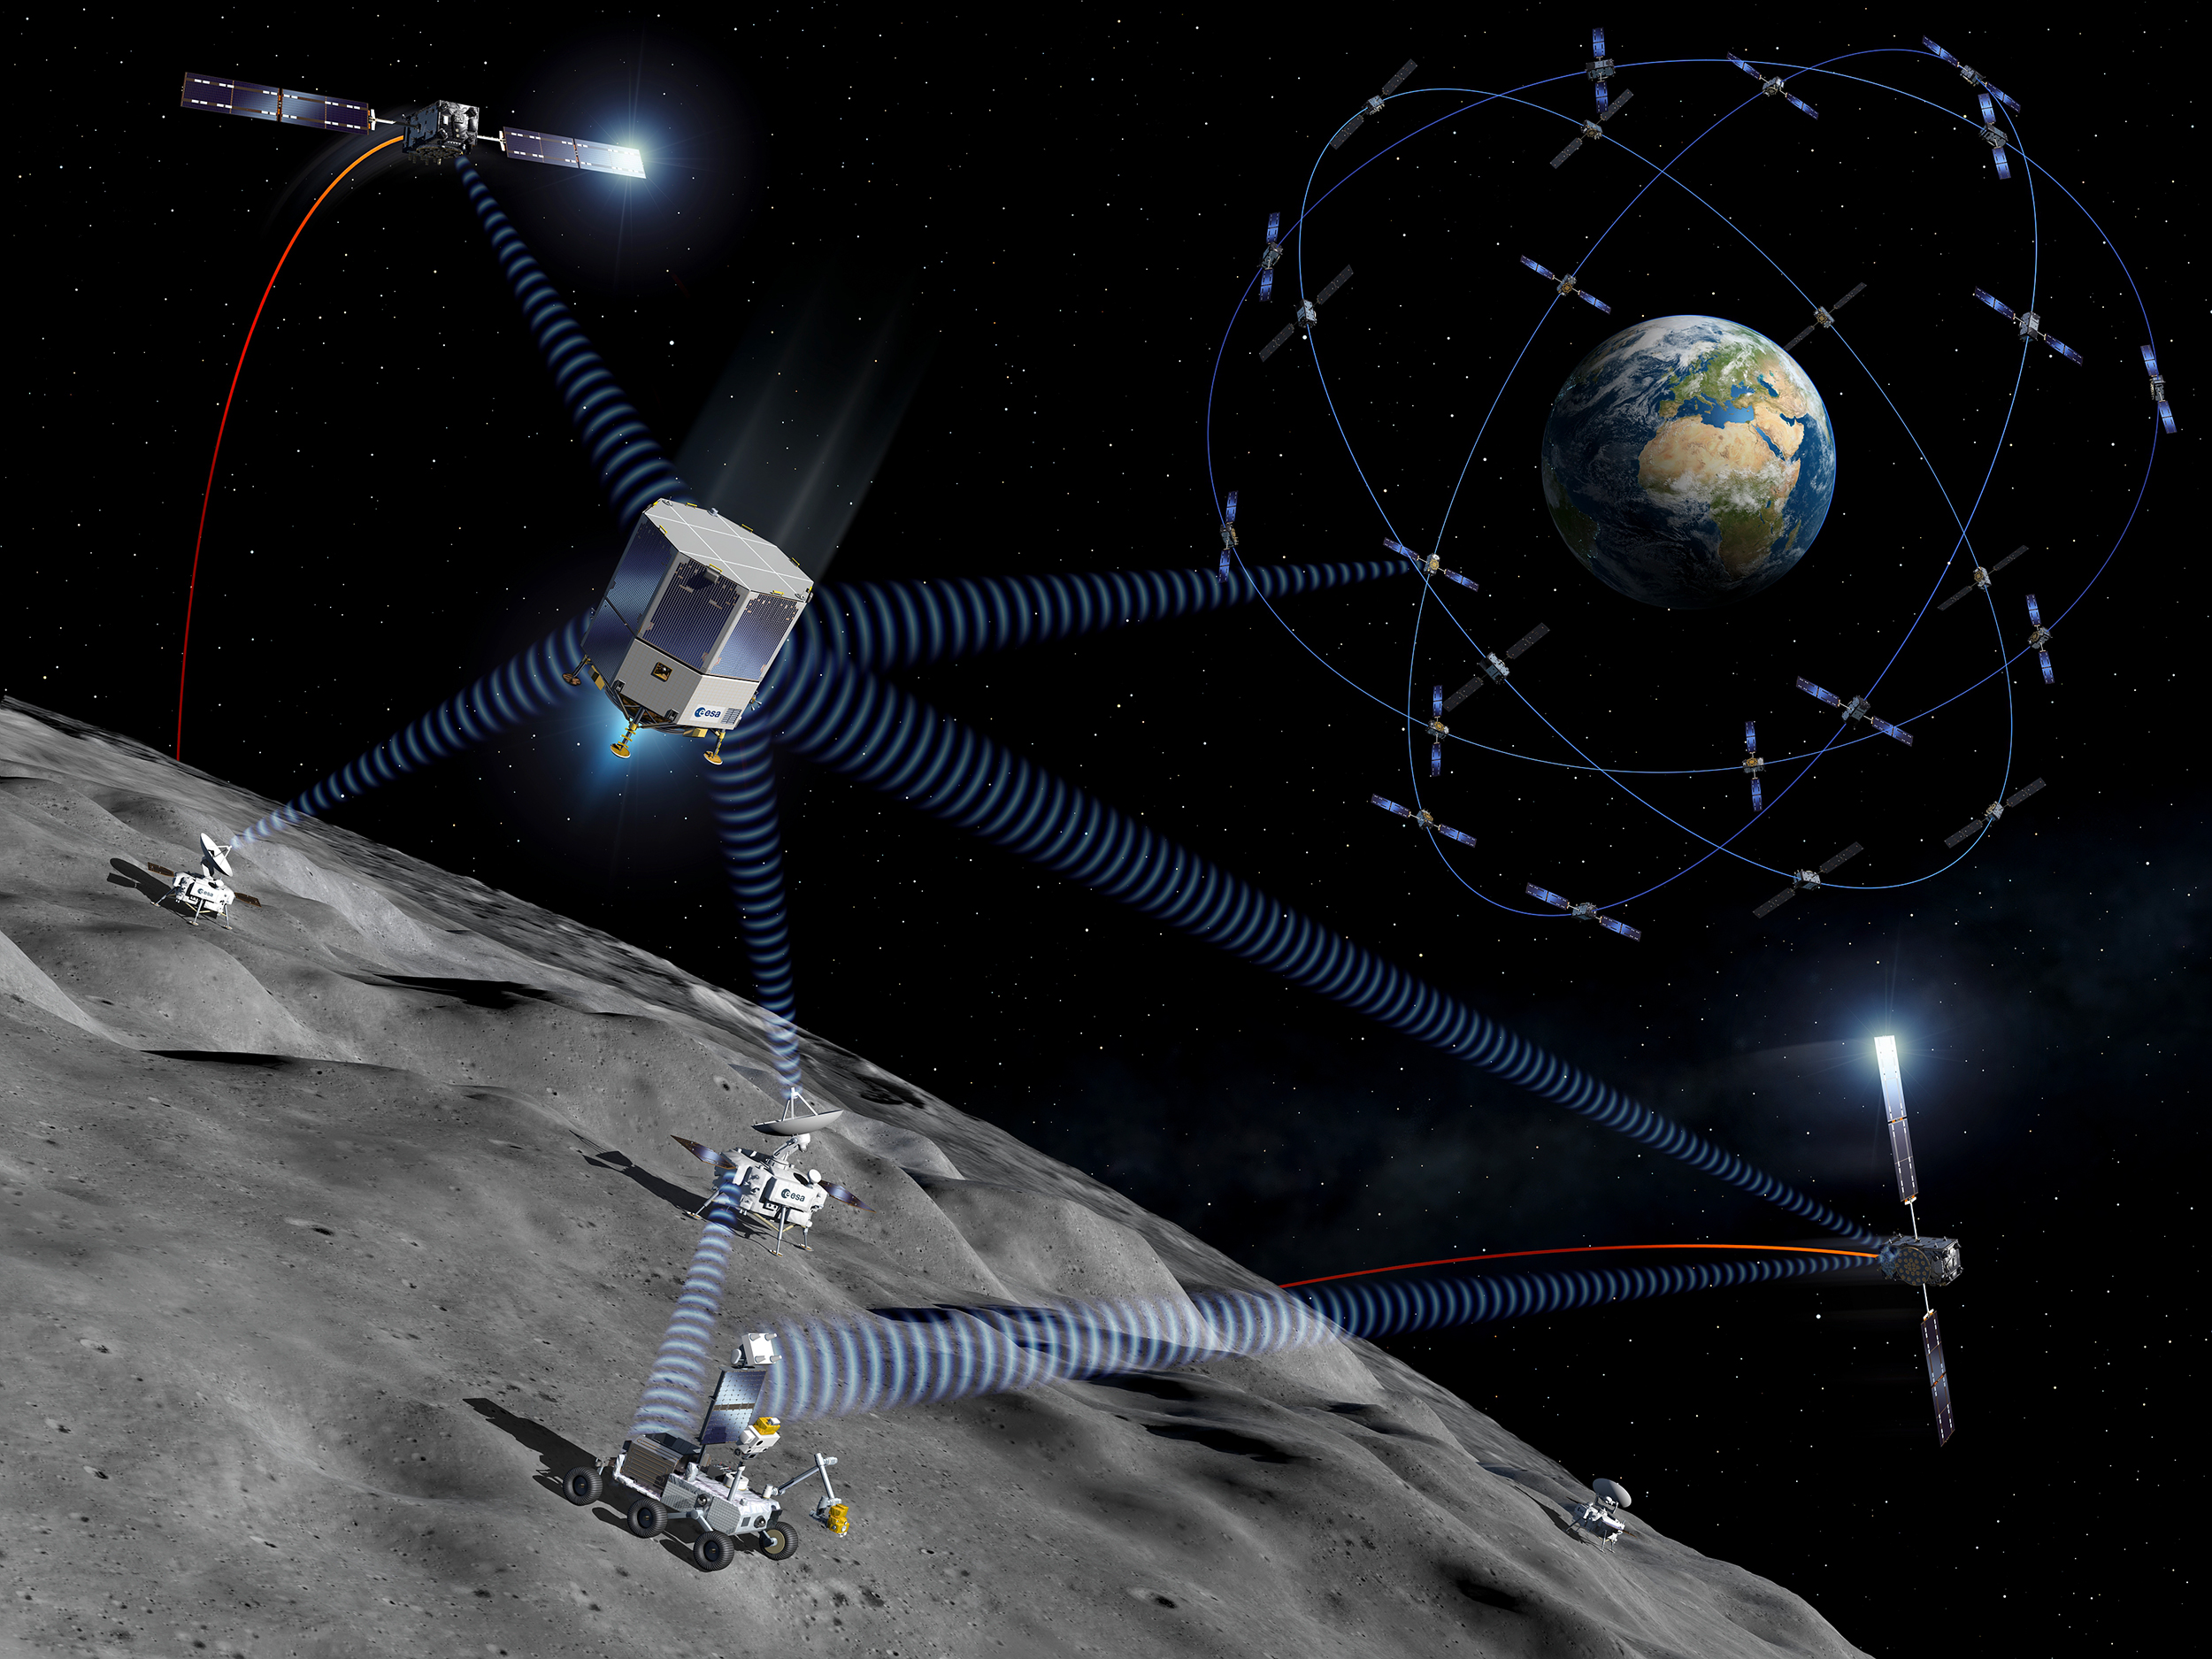 Moonlight, un projet de constellation de satellites lunaires commercialement viable pour fournir des services de télécommunications et de navigation pour les missions sur la Lune. © ESA, P. Carril